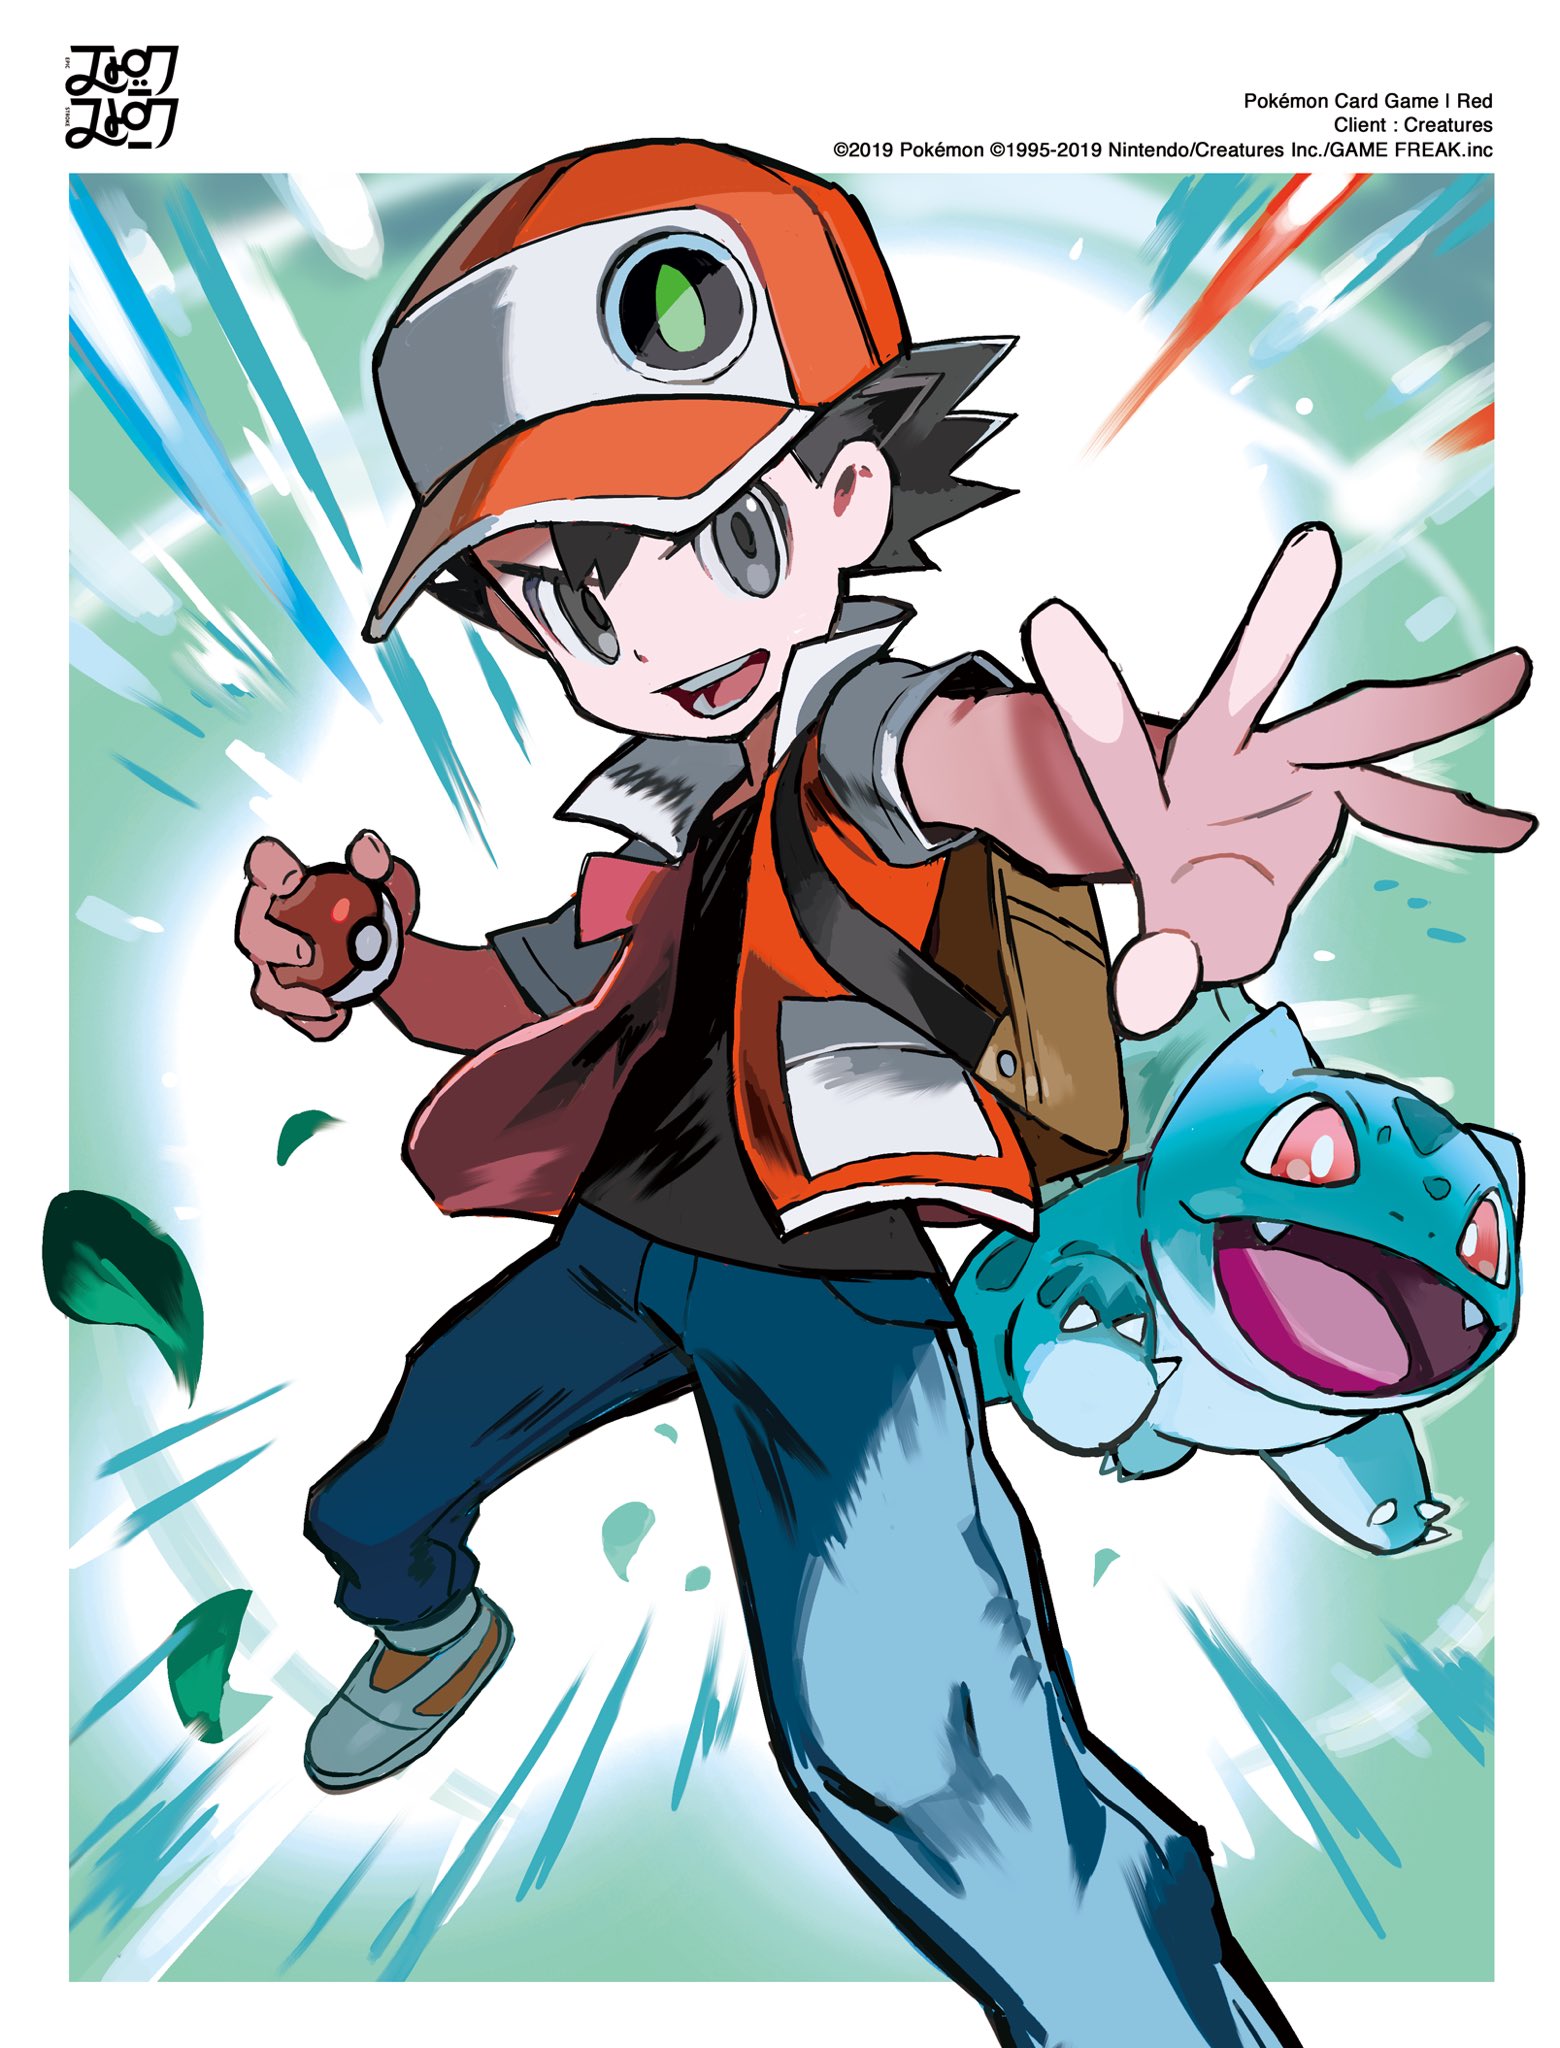 Lucas TiuSam on X: O @TOKIYA atacou de novo, com artes absurdas dos  personagens clássicos Red, Blue e Green! O Pokémon TCG realmente é  altamente colecionável!!! Os iniciais de cada treinador estão